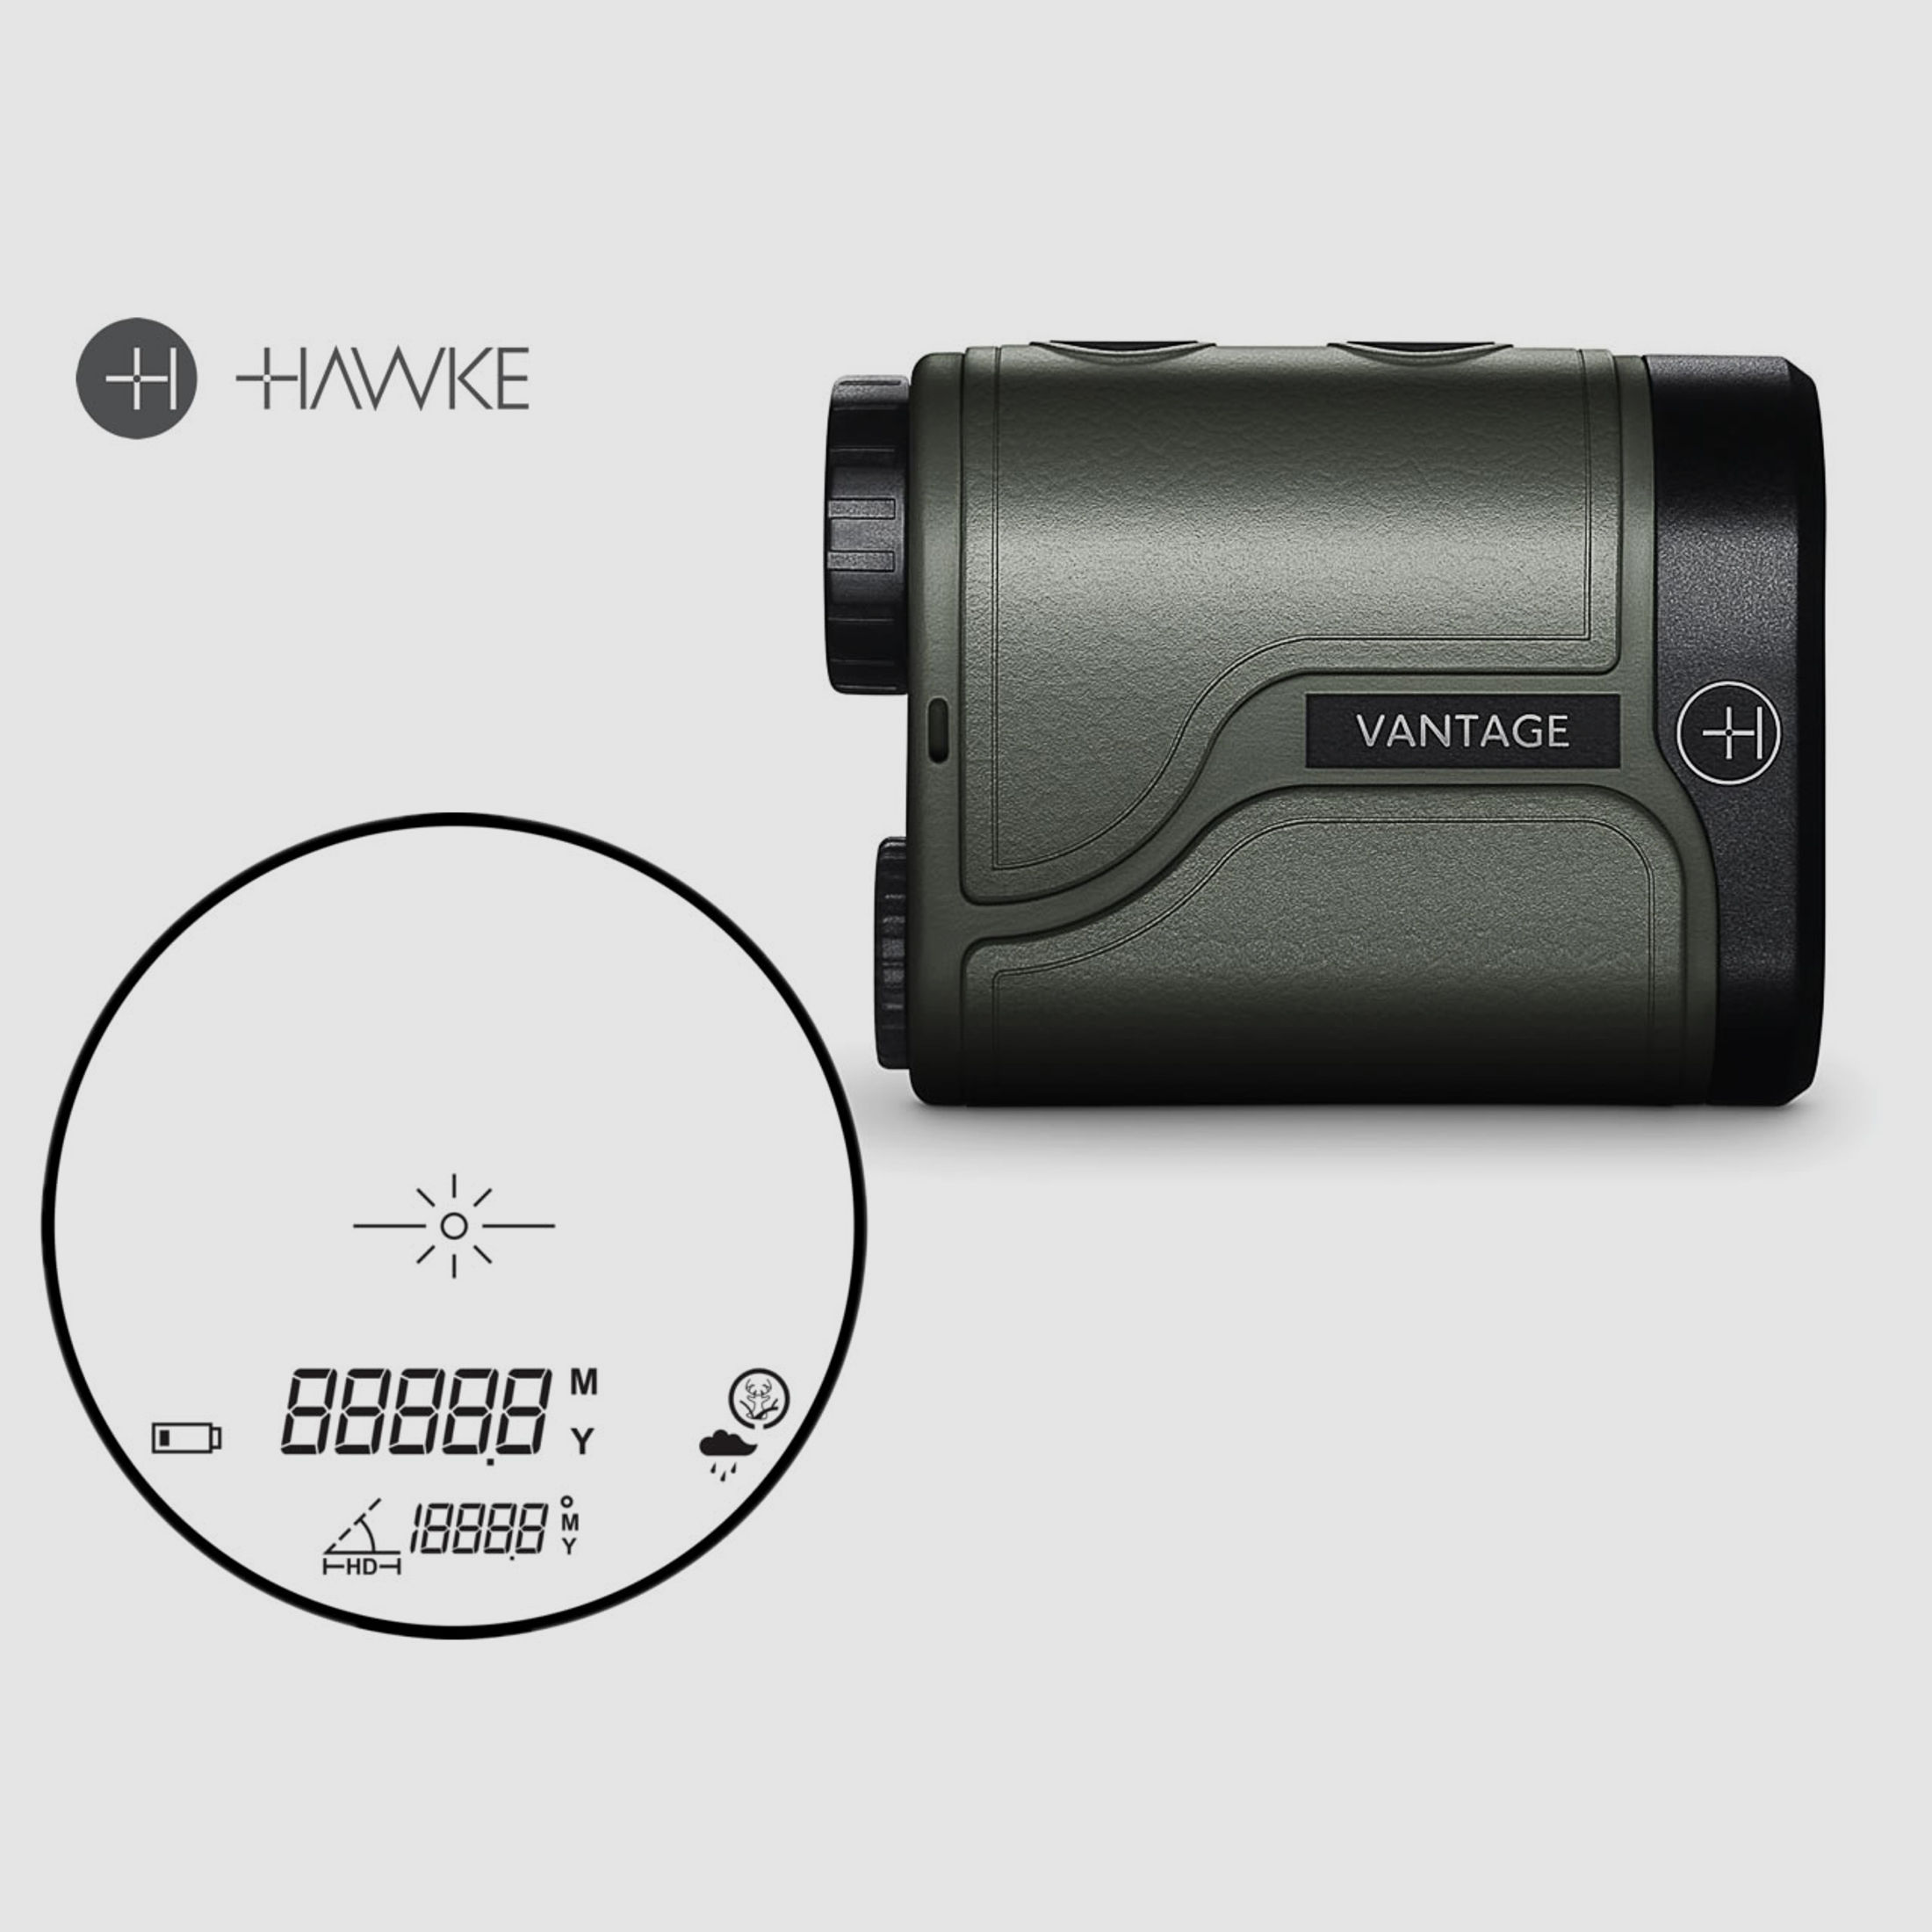 HAWKE Entfernungsmesser Laser Range Finder VANTAGE 600, 6 m bis 600 m, 6-fach Zoom